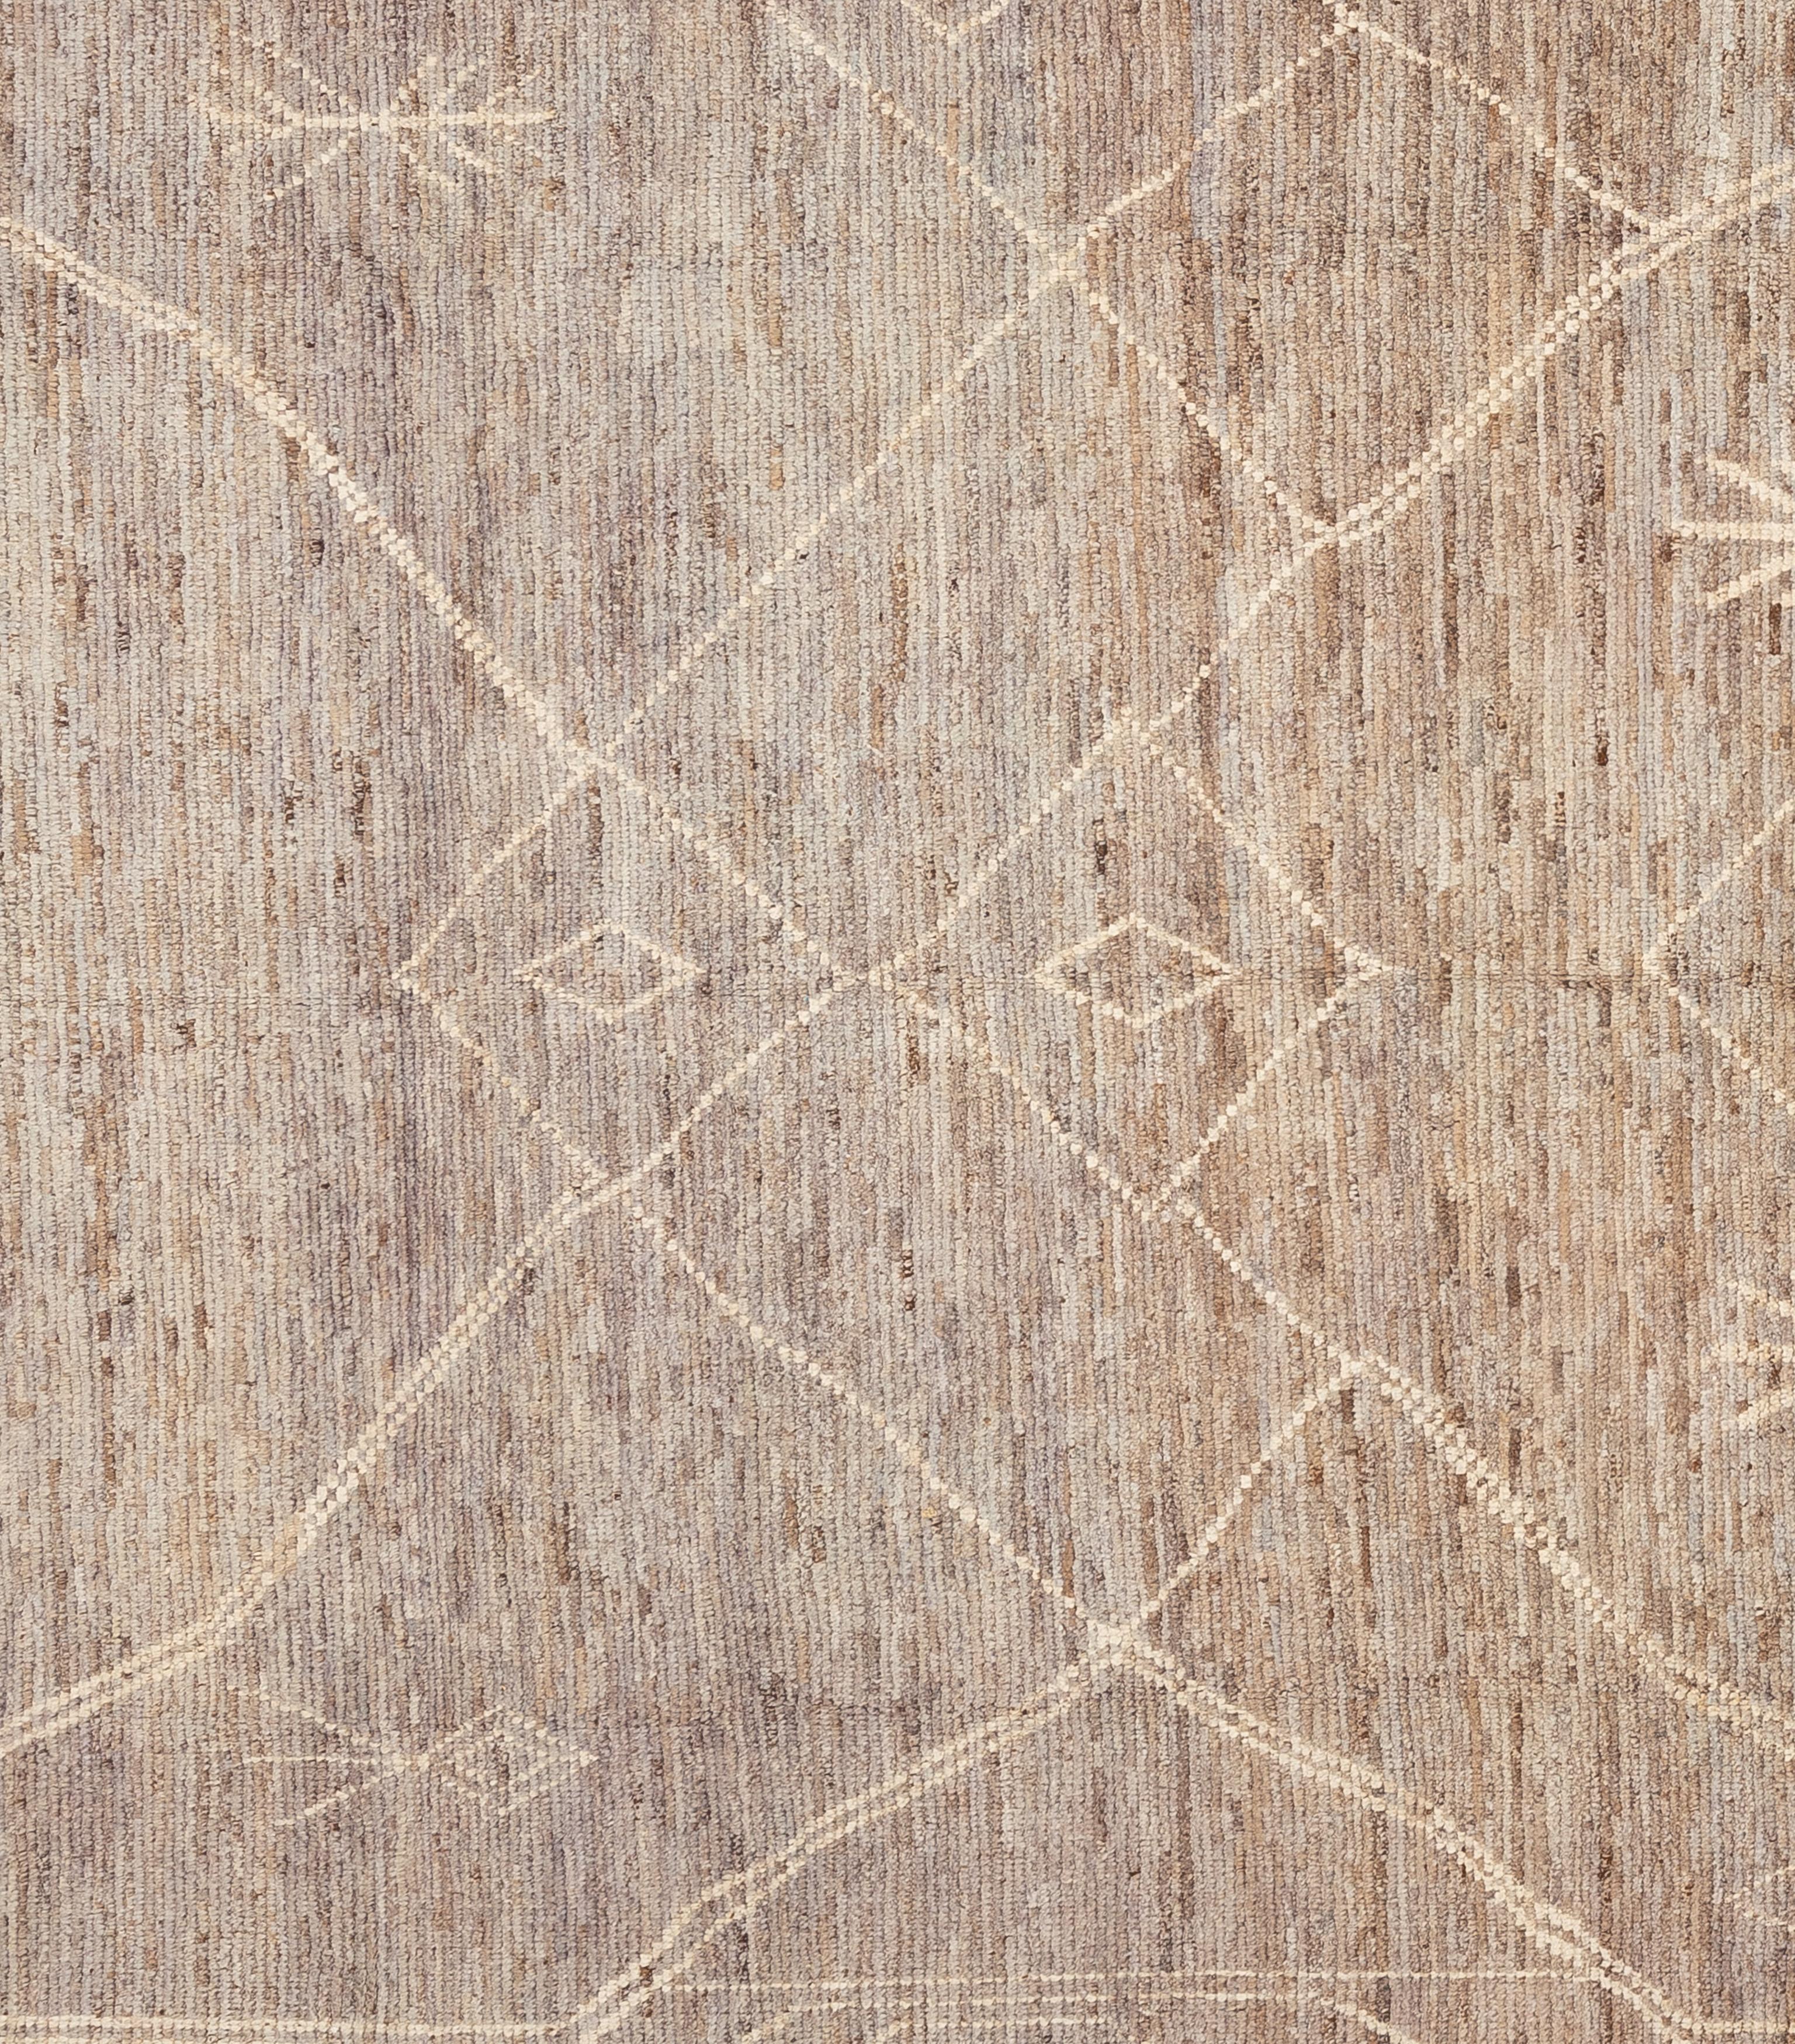 Handgewebt aus 100% handgesponnener Wolle in den subtropischen Wäldern Pakistans ist dieser wunderschöne, natürlich gefärbte marokkanische Teppich ein echtes Unikat. Marokkanische Teppiche sind meist schlicht und passen perfekt zu Ihrer Einrichtung.